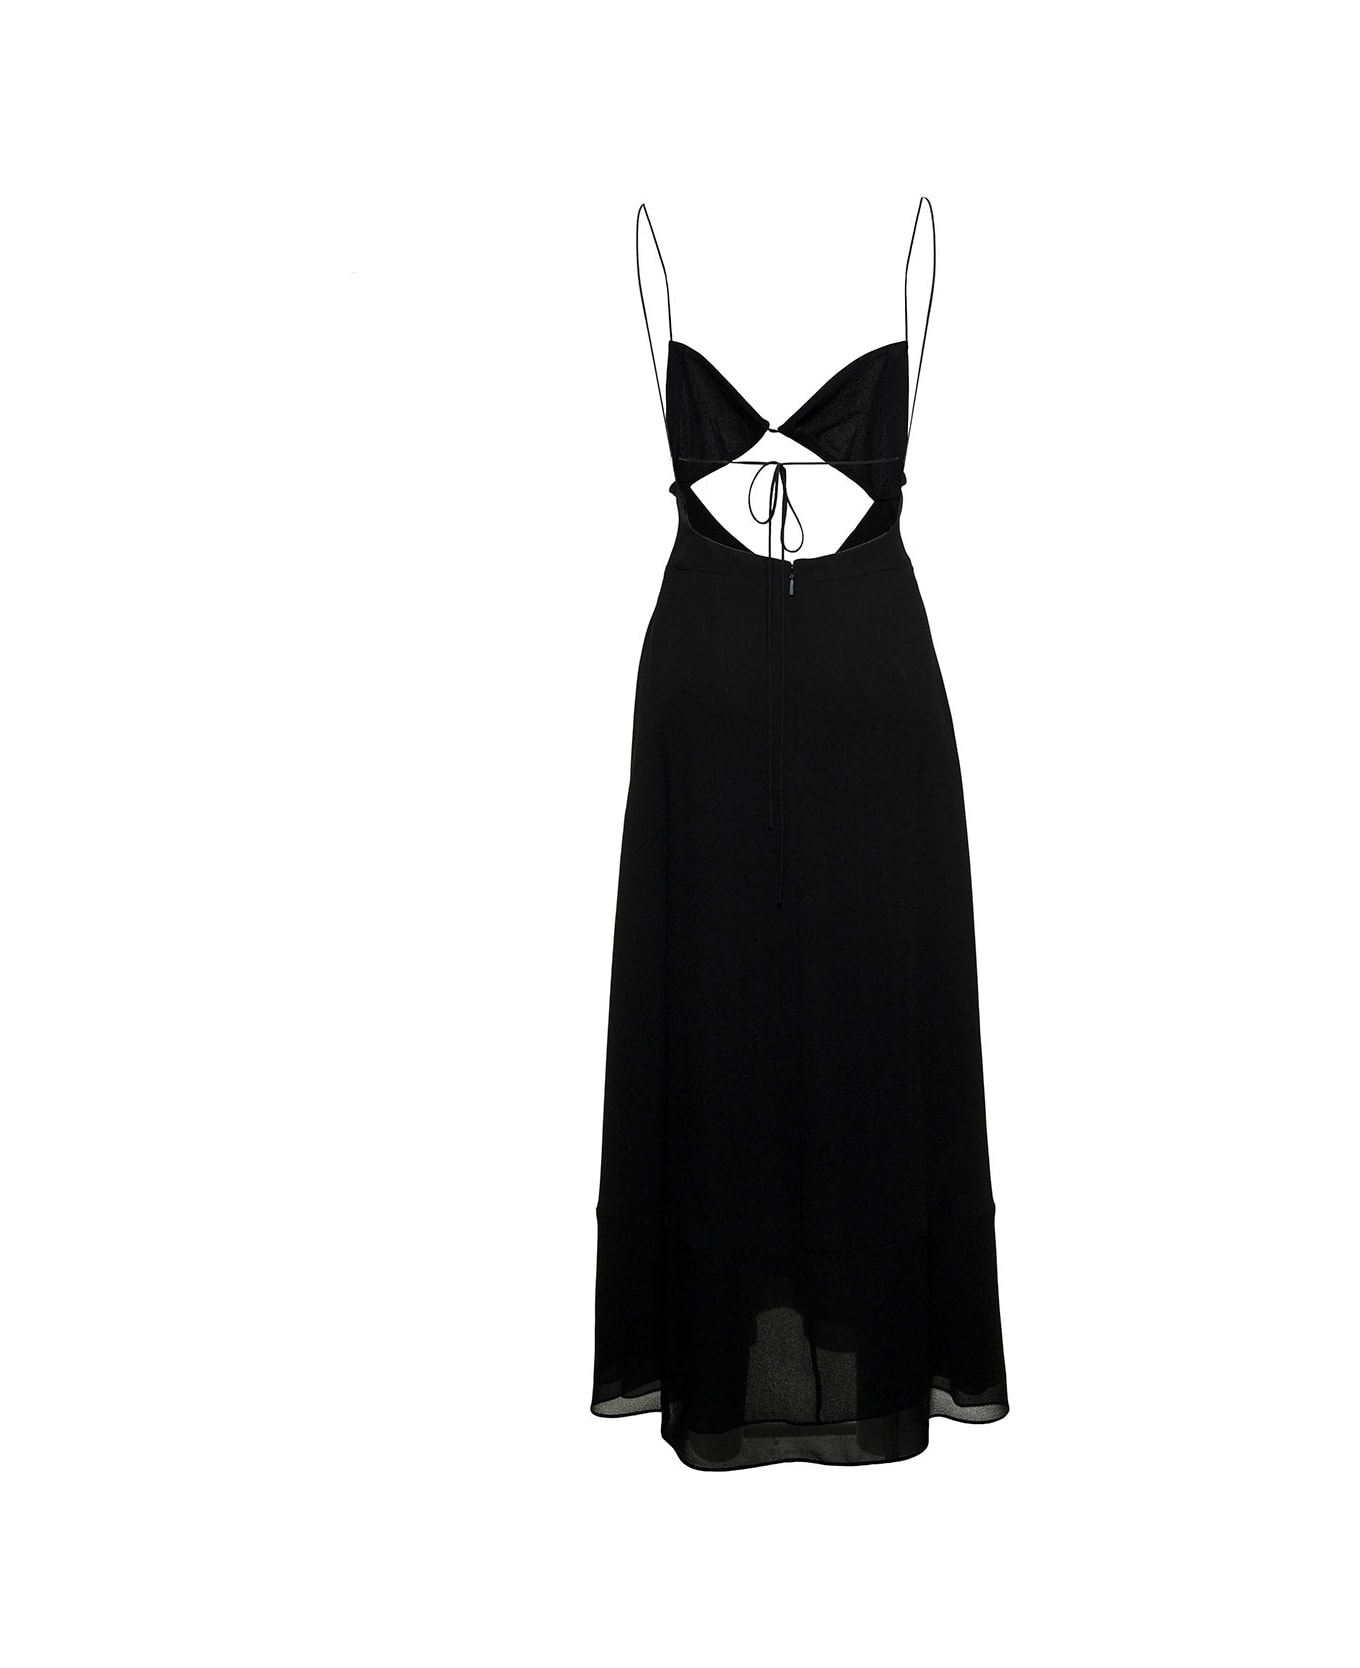 Saint Laurent Black Viscose Crepe Long Dress With Cut Out Detail - Black